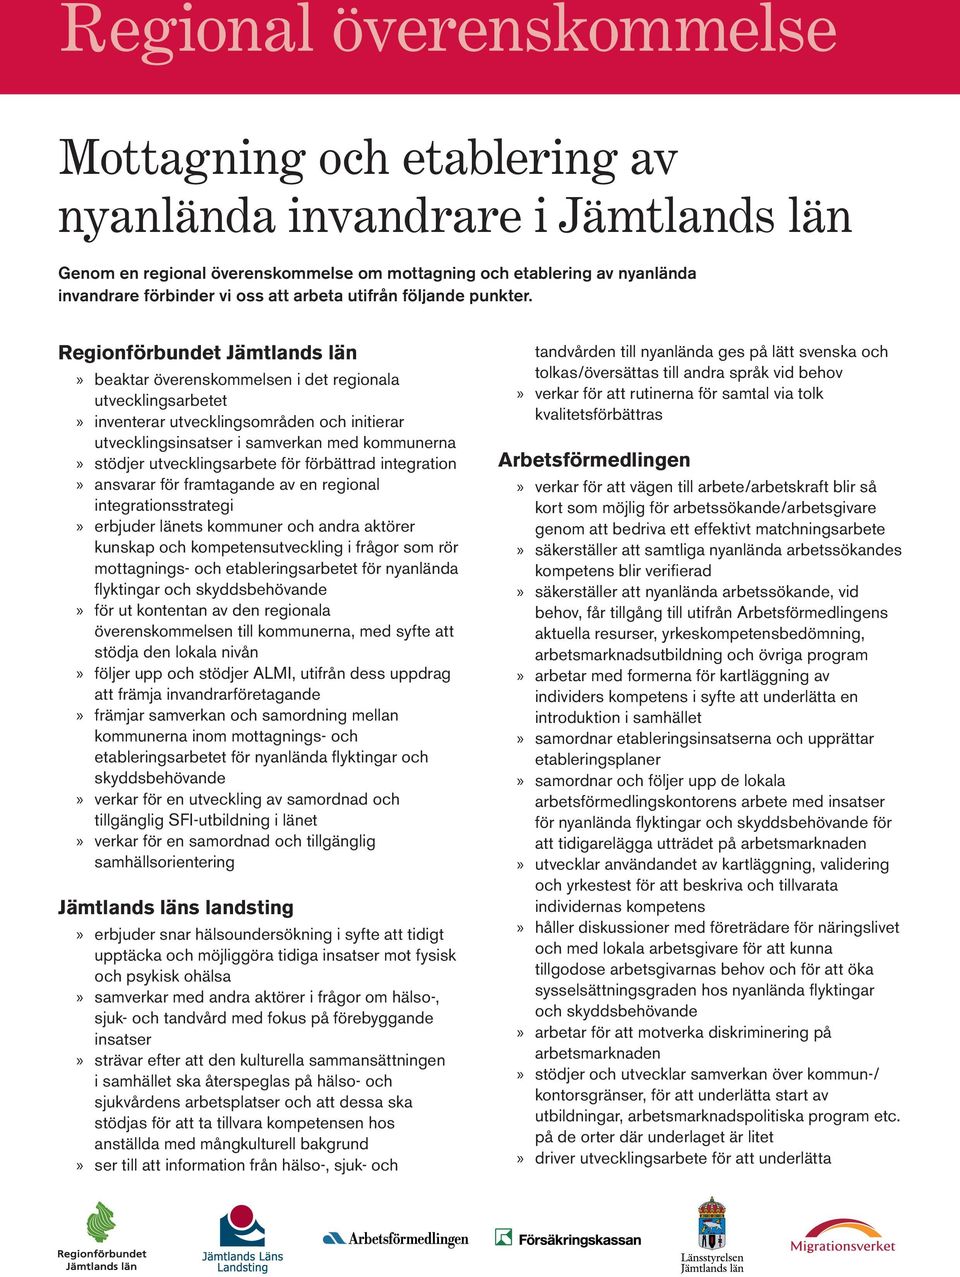 Regionförbundet Jämtlands län beaktar överenskommelsen i det regionala utvecklingsarbetet inventerar utvecklingsområden och initierar utvecklingsinsatser i samverkan med kommunerna stödjer